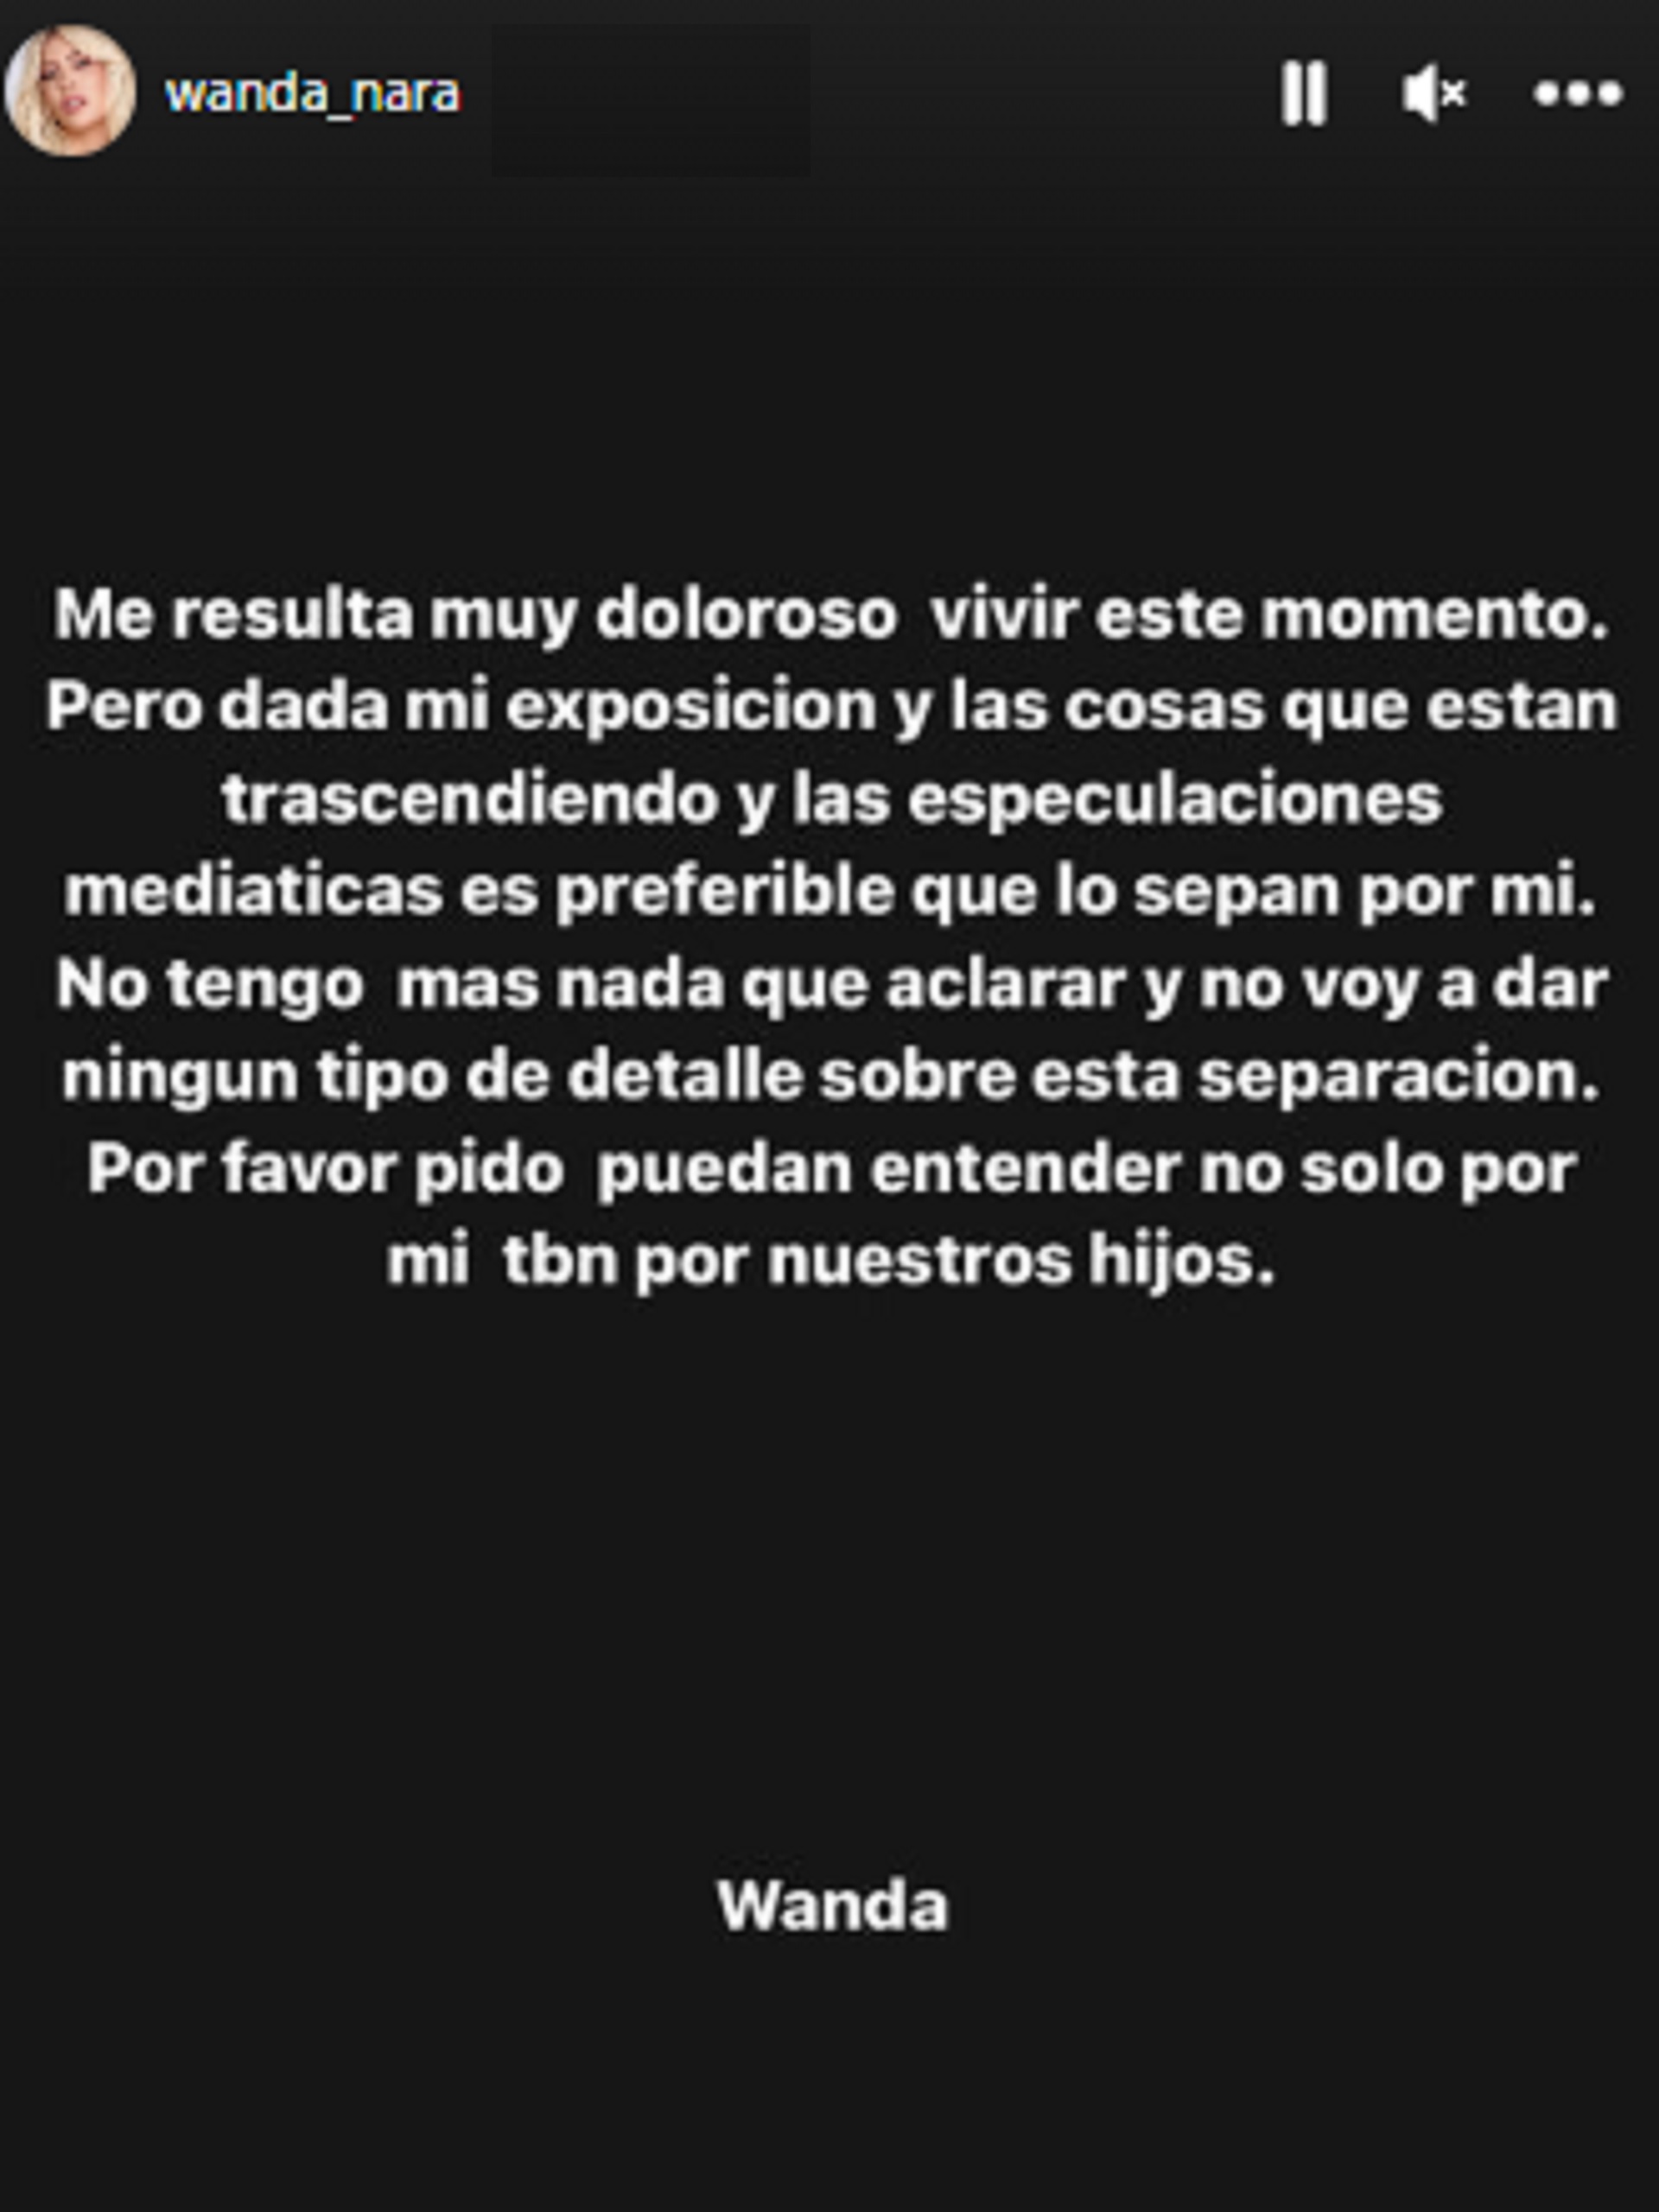 Pengumuman Wanda Nara Konfirmasi Perpisahan dari Mauro Icardi (Foto: Instagram)